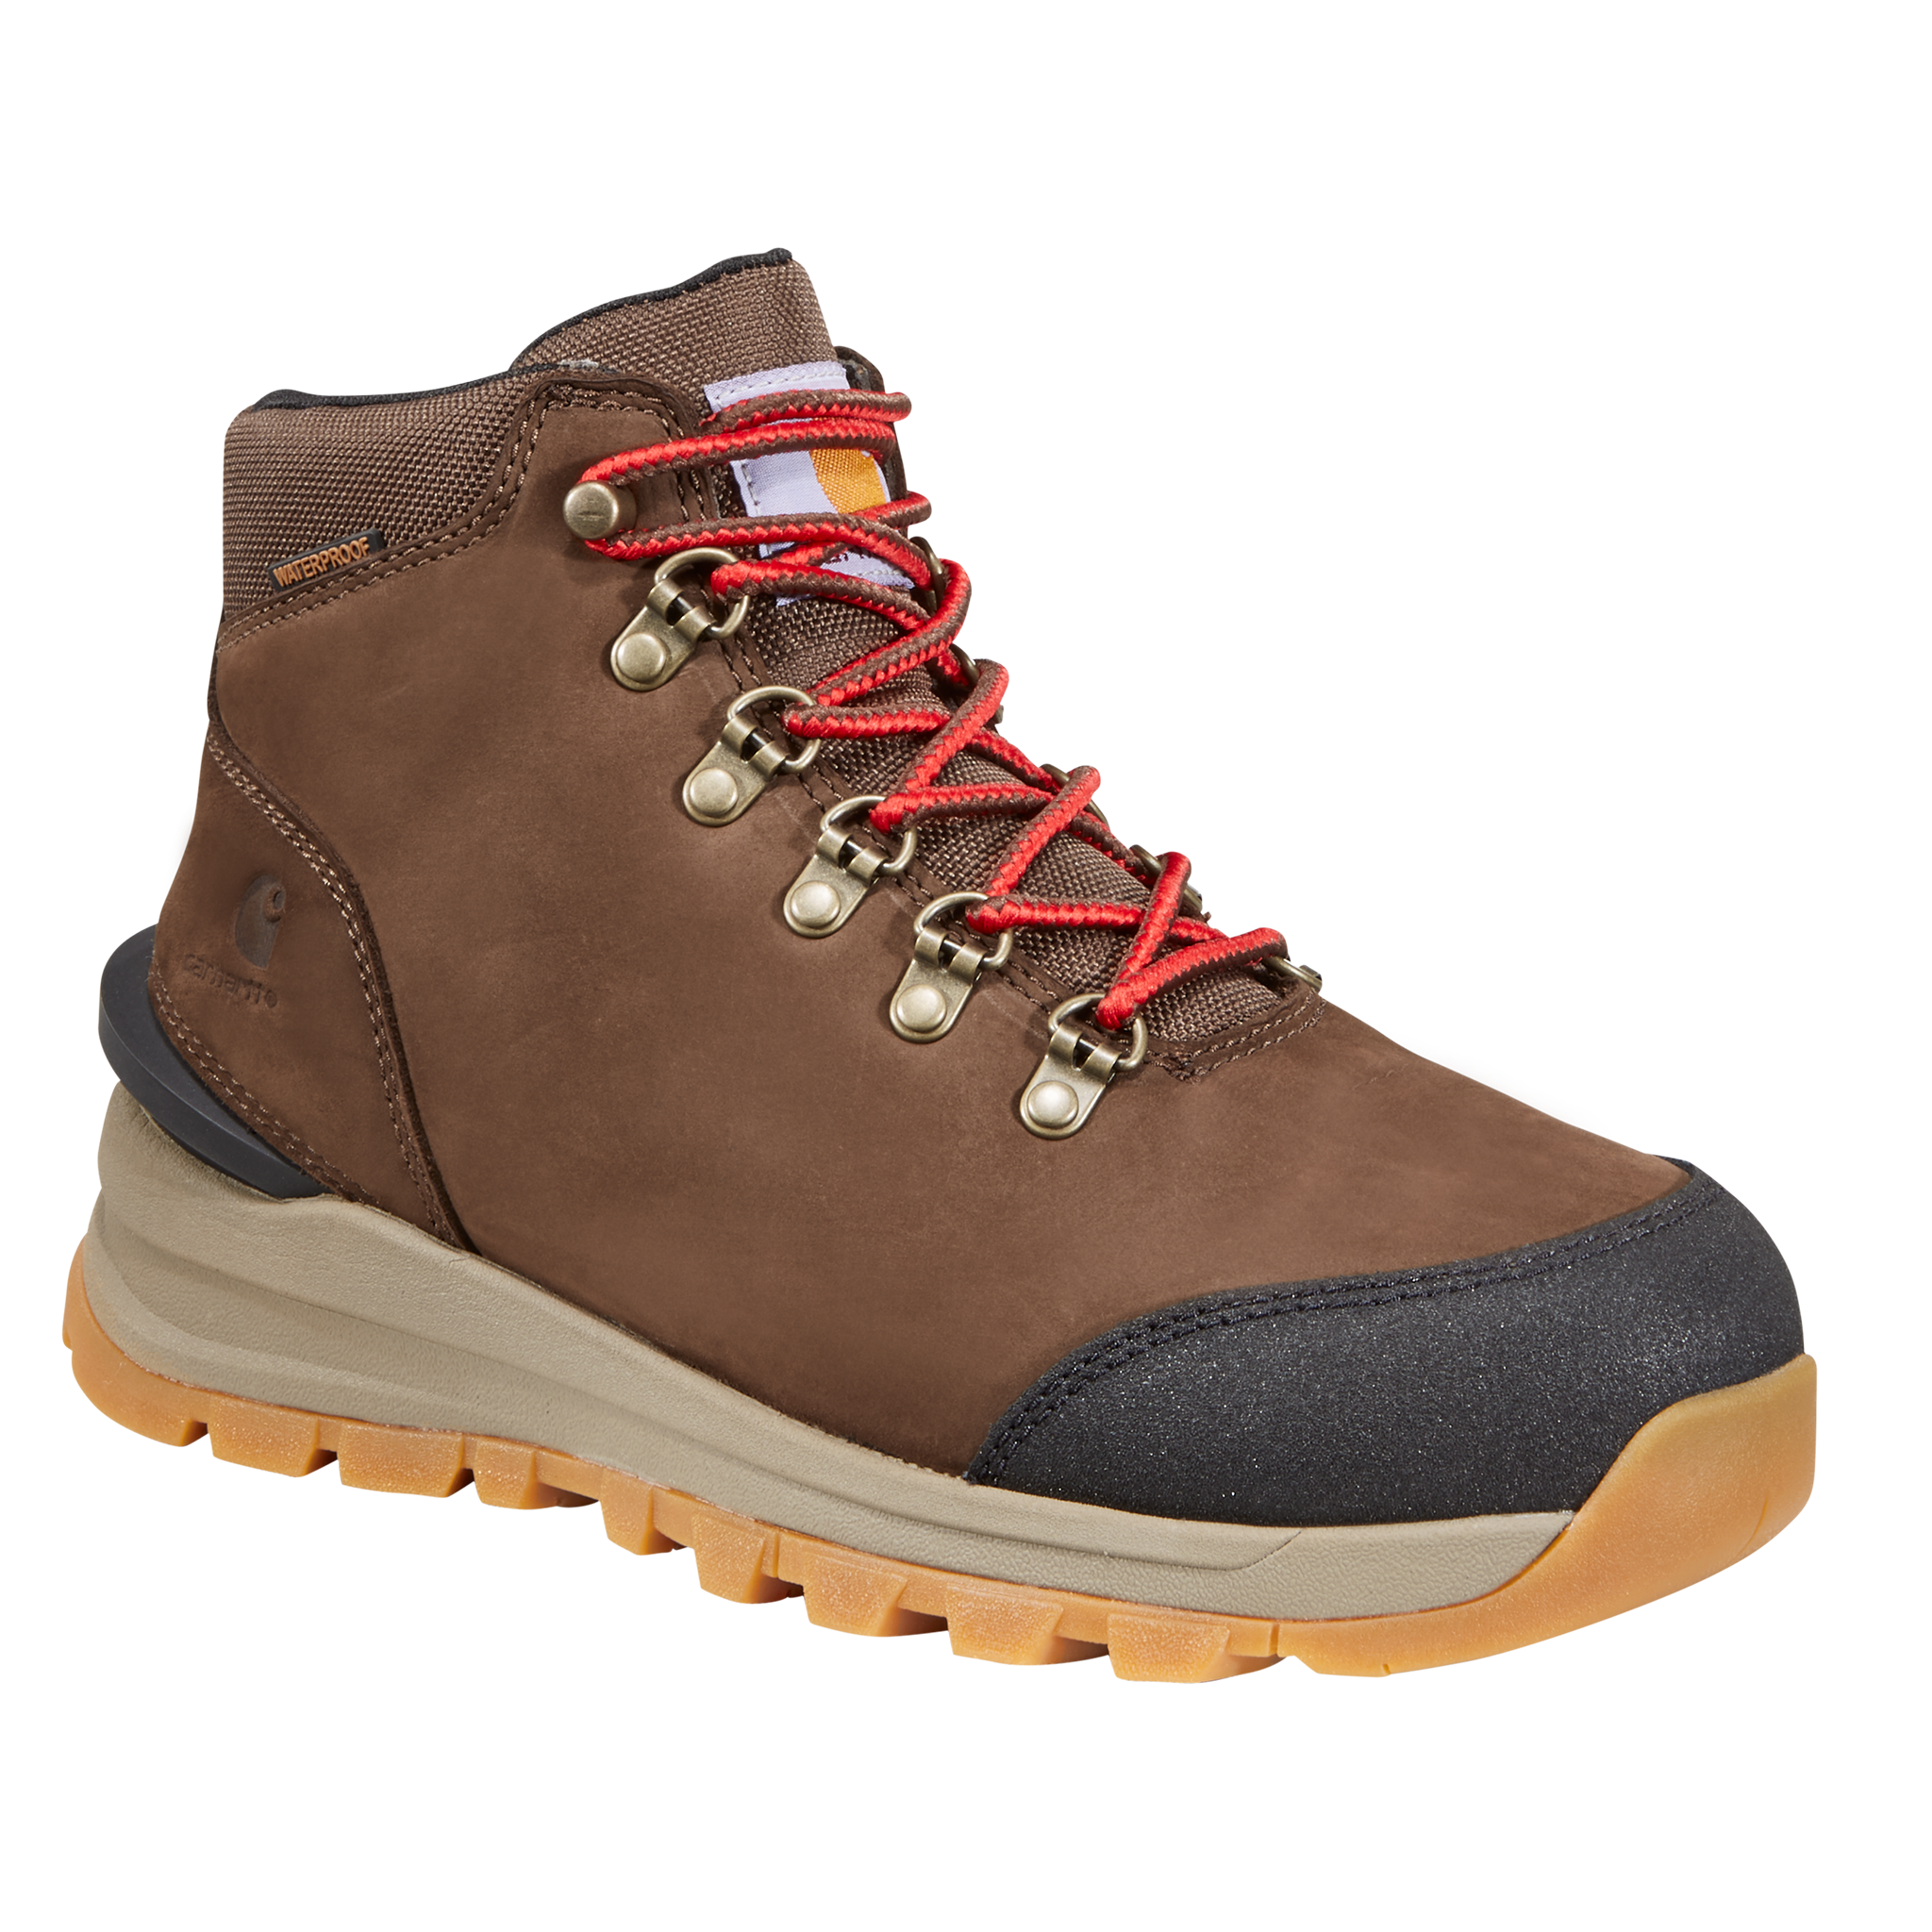 Carhartt Gilmore Waterproof Hiking Boots for Ladies - Dark Brown Nubuck - 8.5M